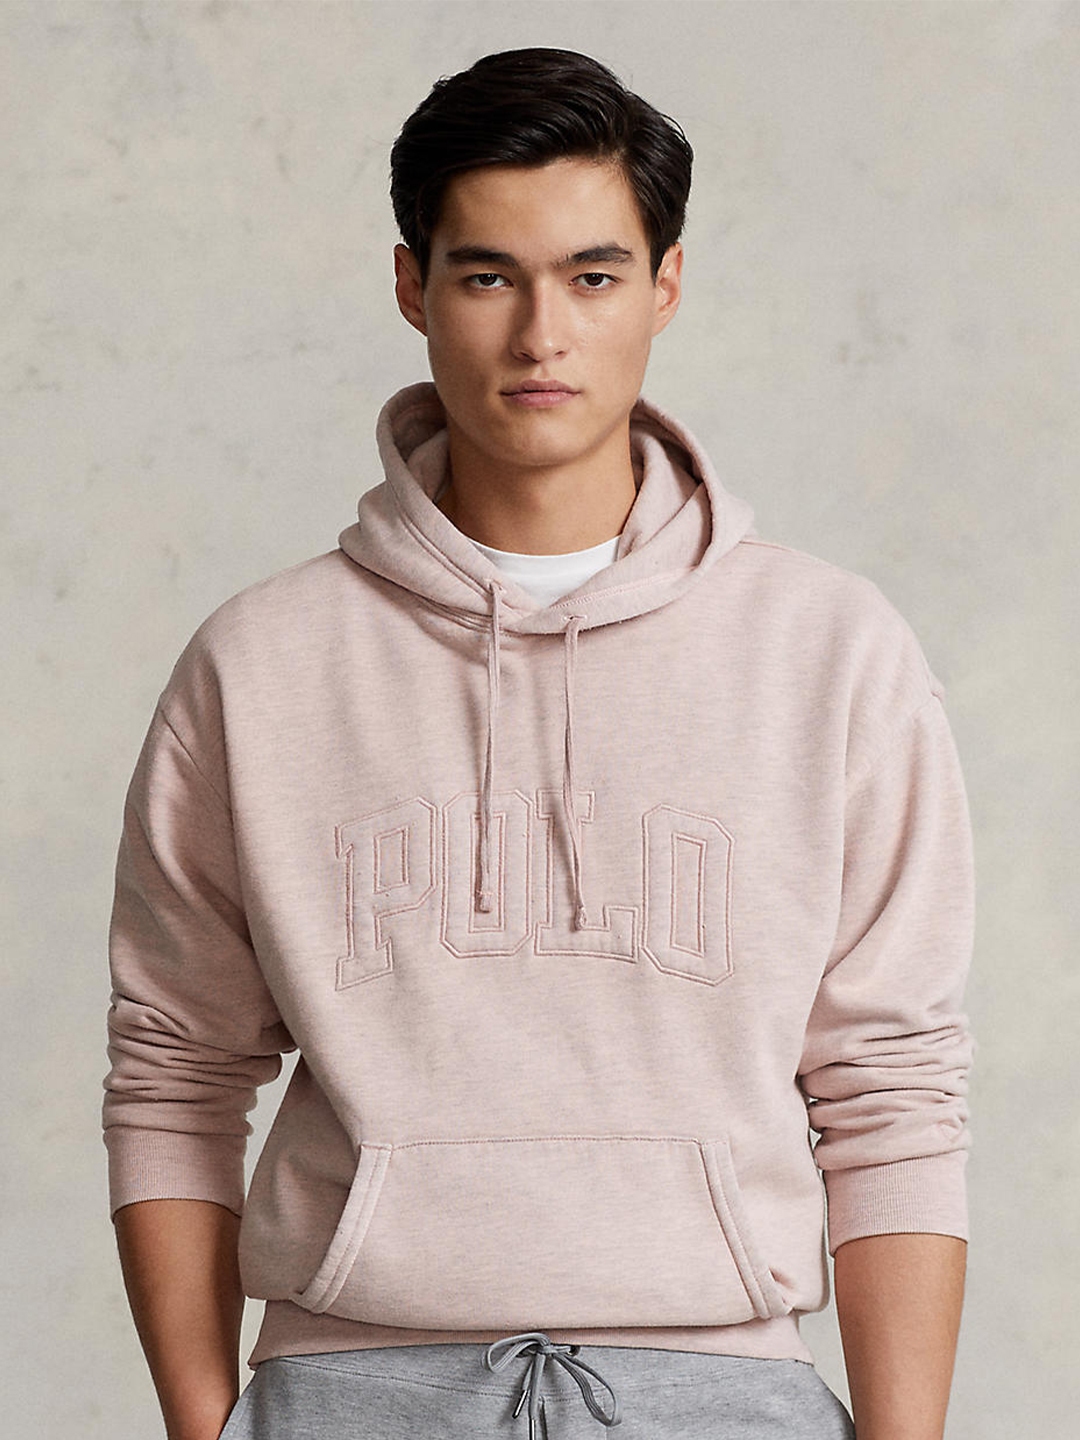 Buy Polo Ralph Lauren Men Hooded Pullover Sweatshirt - Sweatshirts for Men  21749850